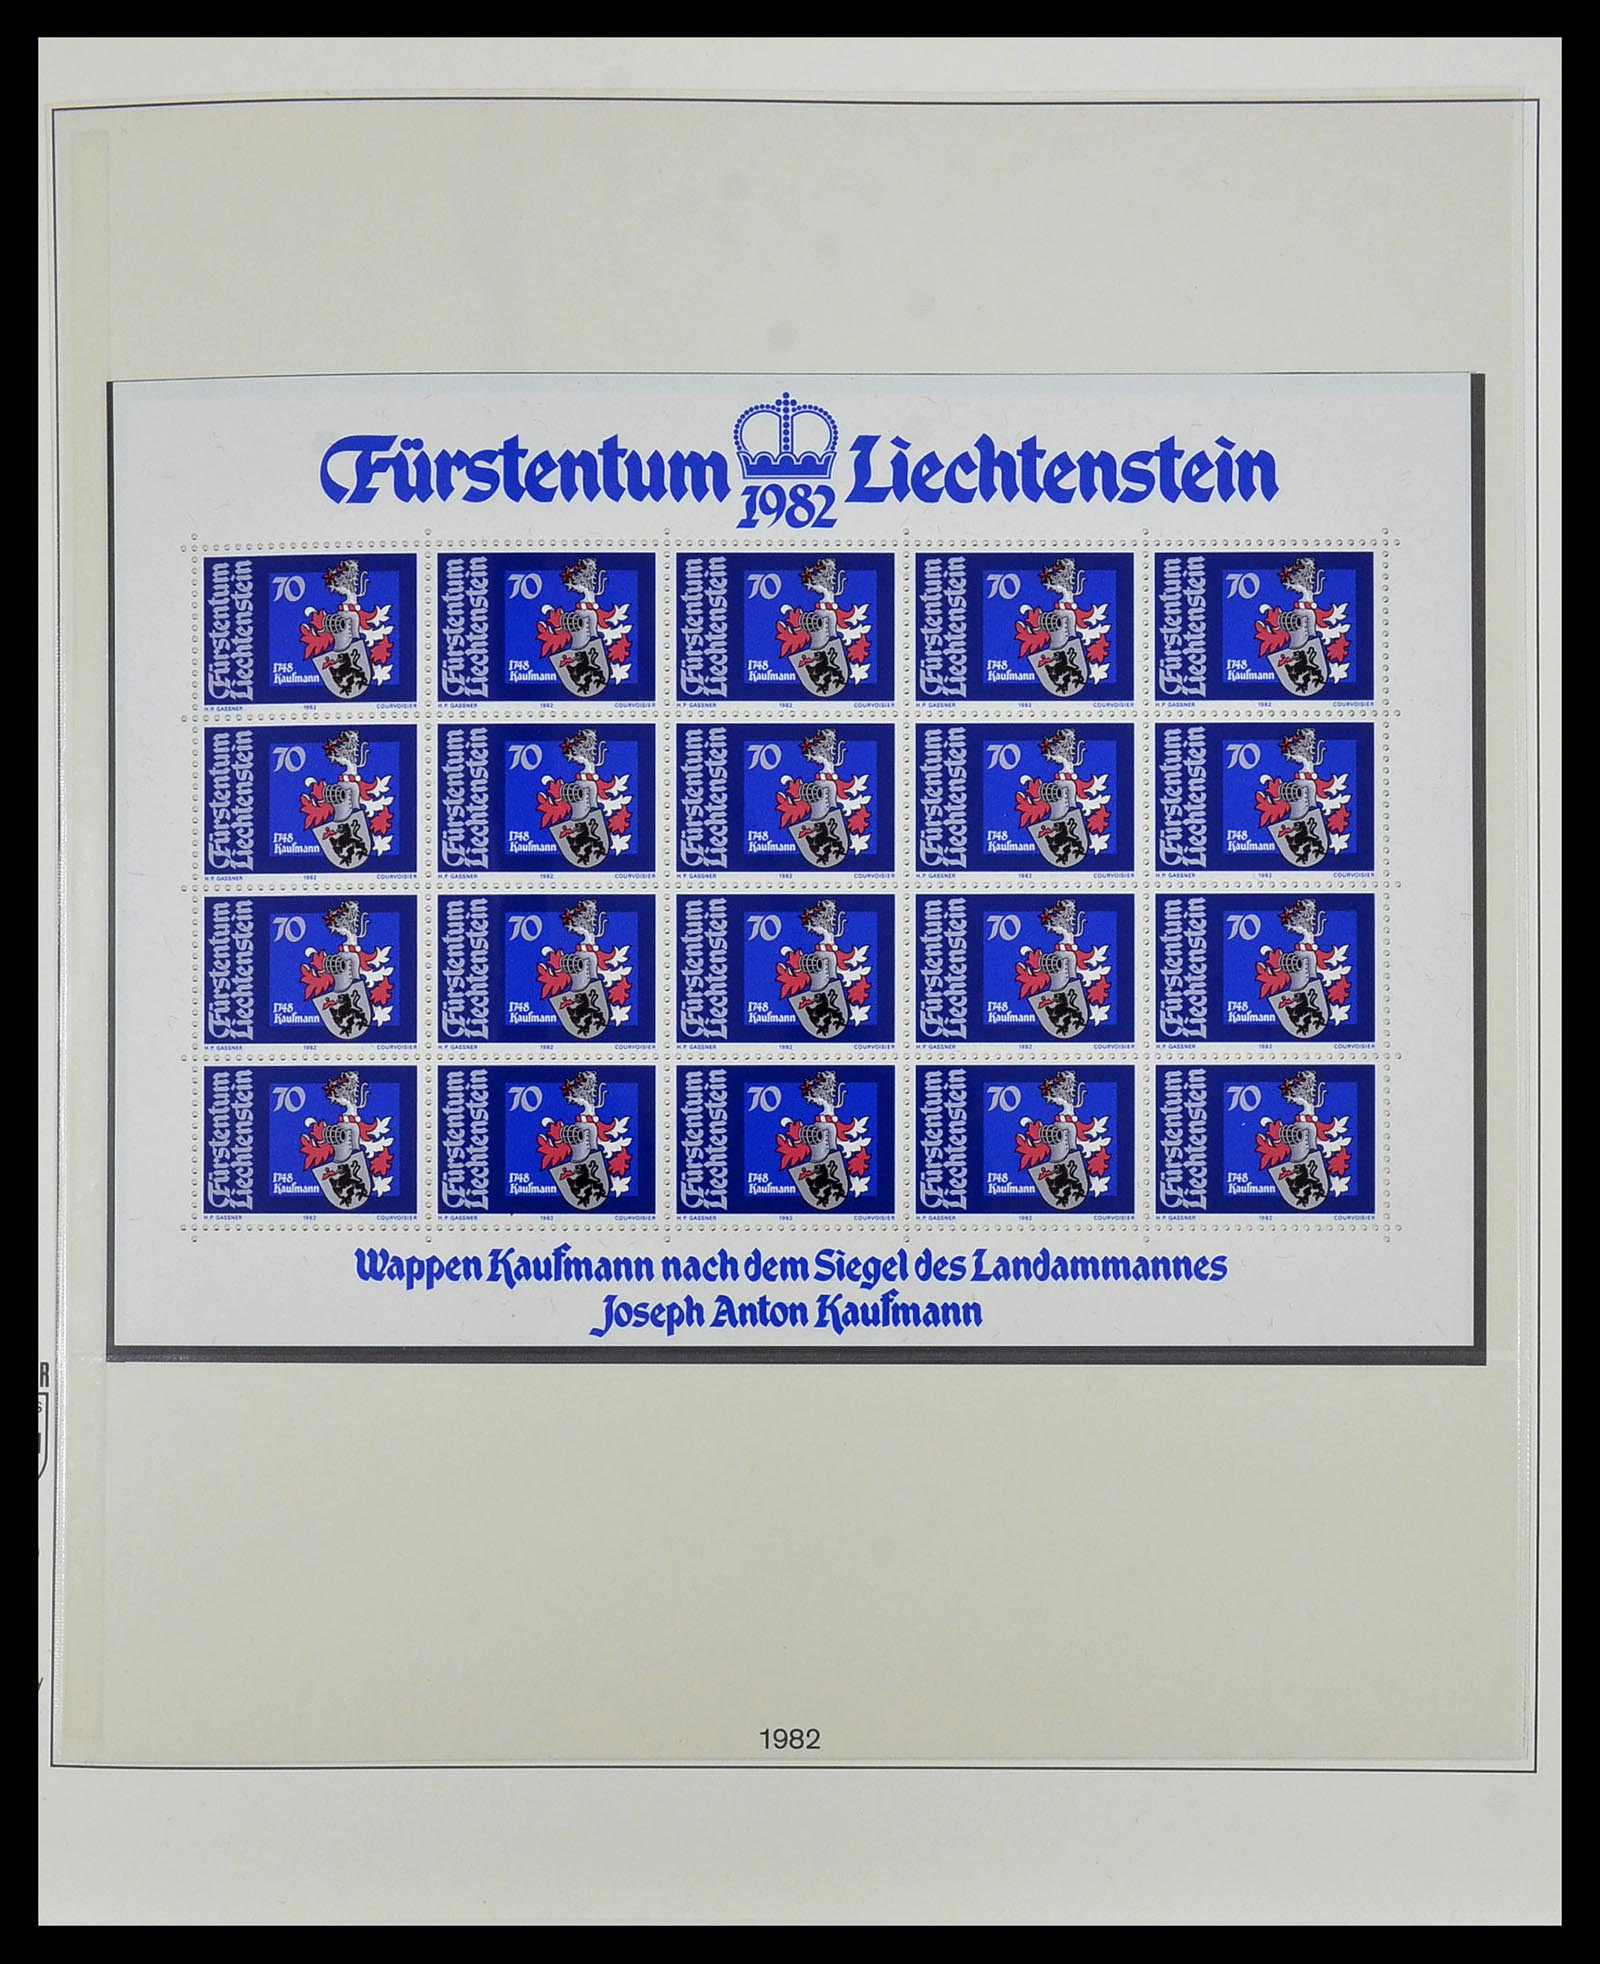 34187 004 - Stamp collection 34187 Liechtenstein kleinbogen 1982-1995.